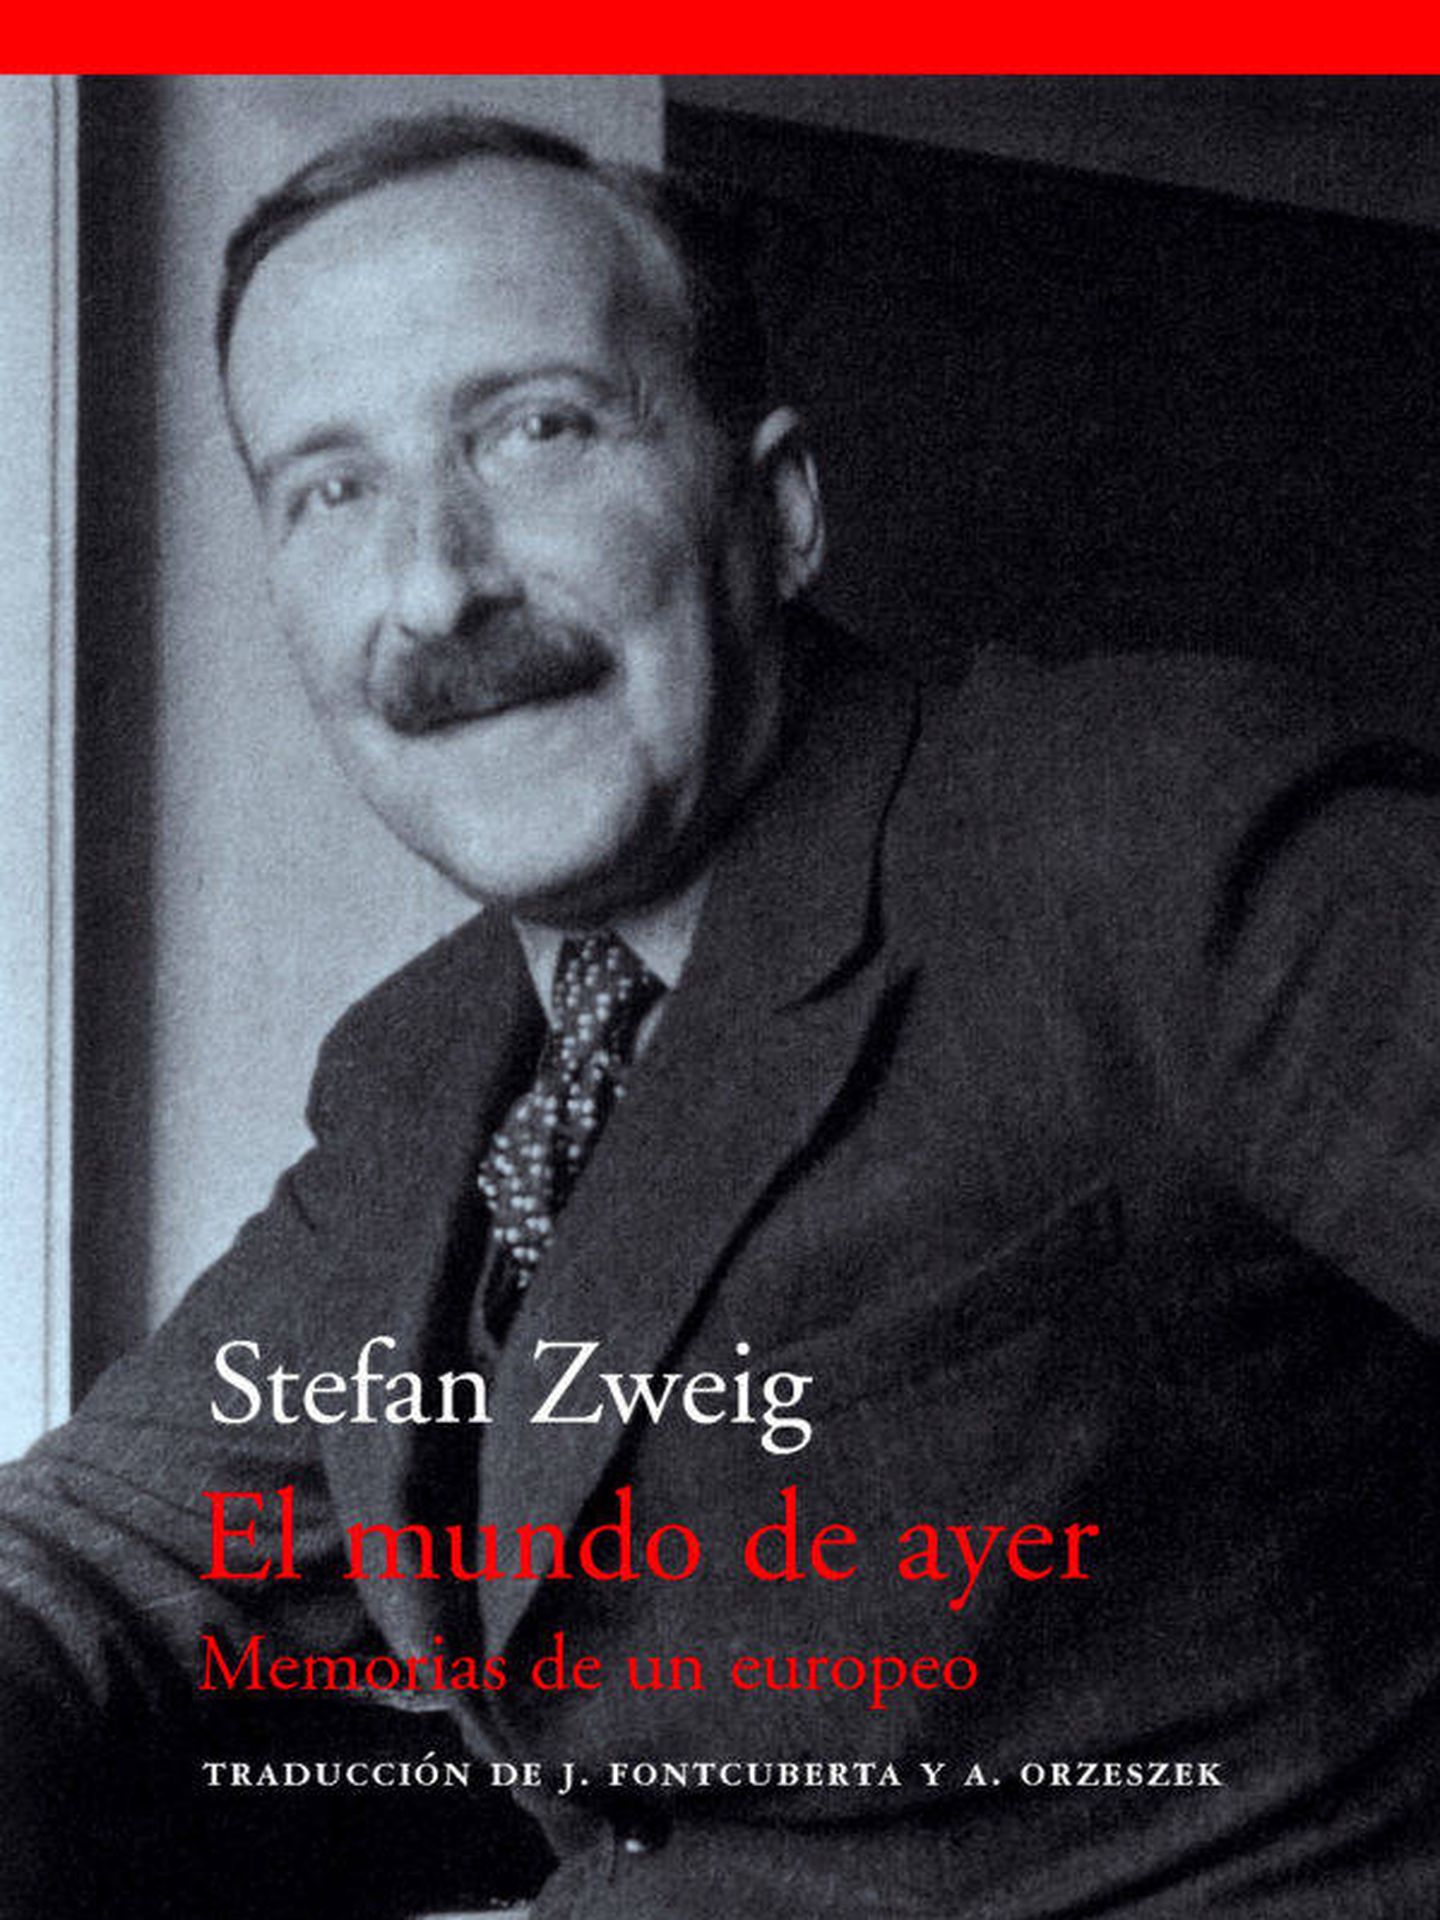 'El mundo de ayer' - Stefan Zweig